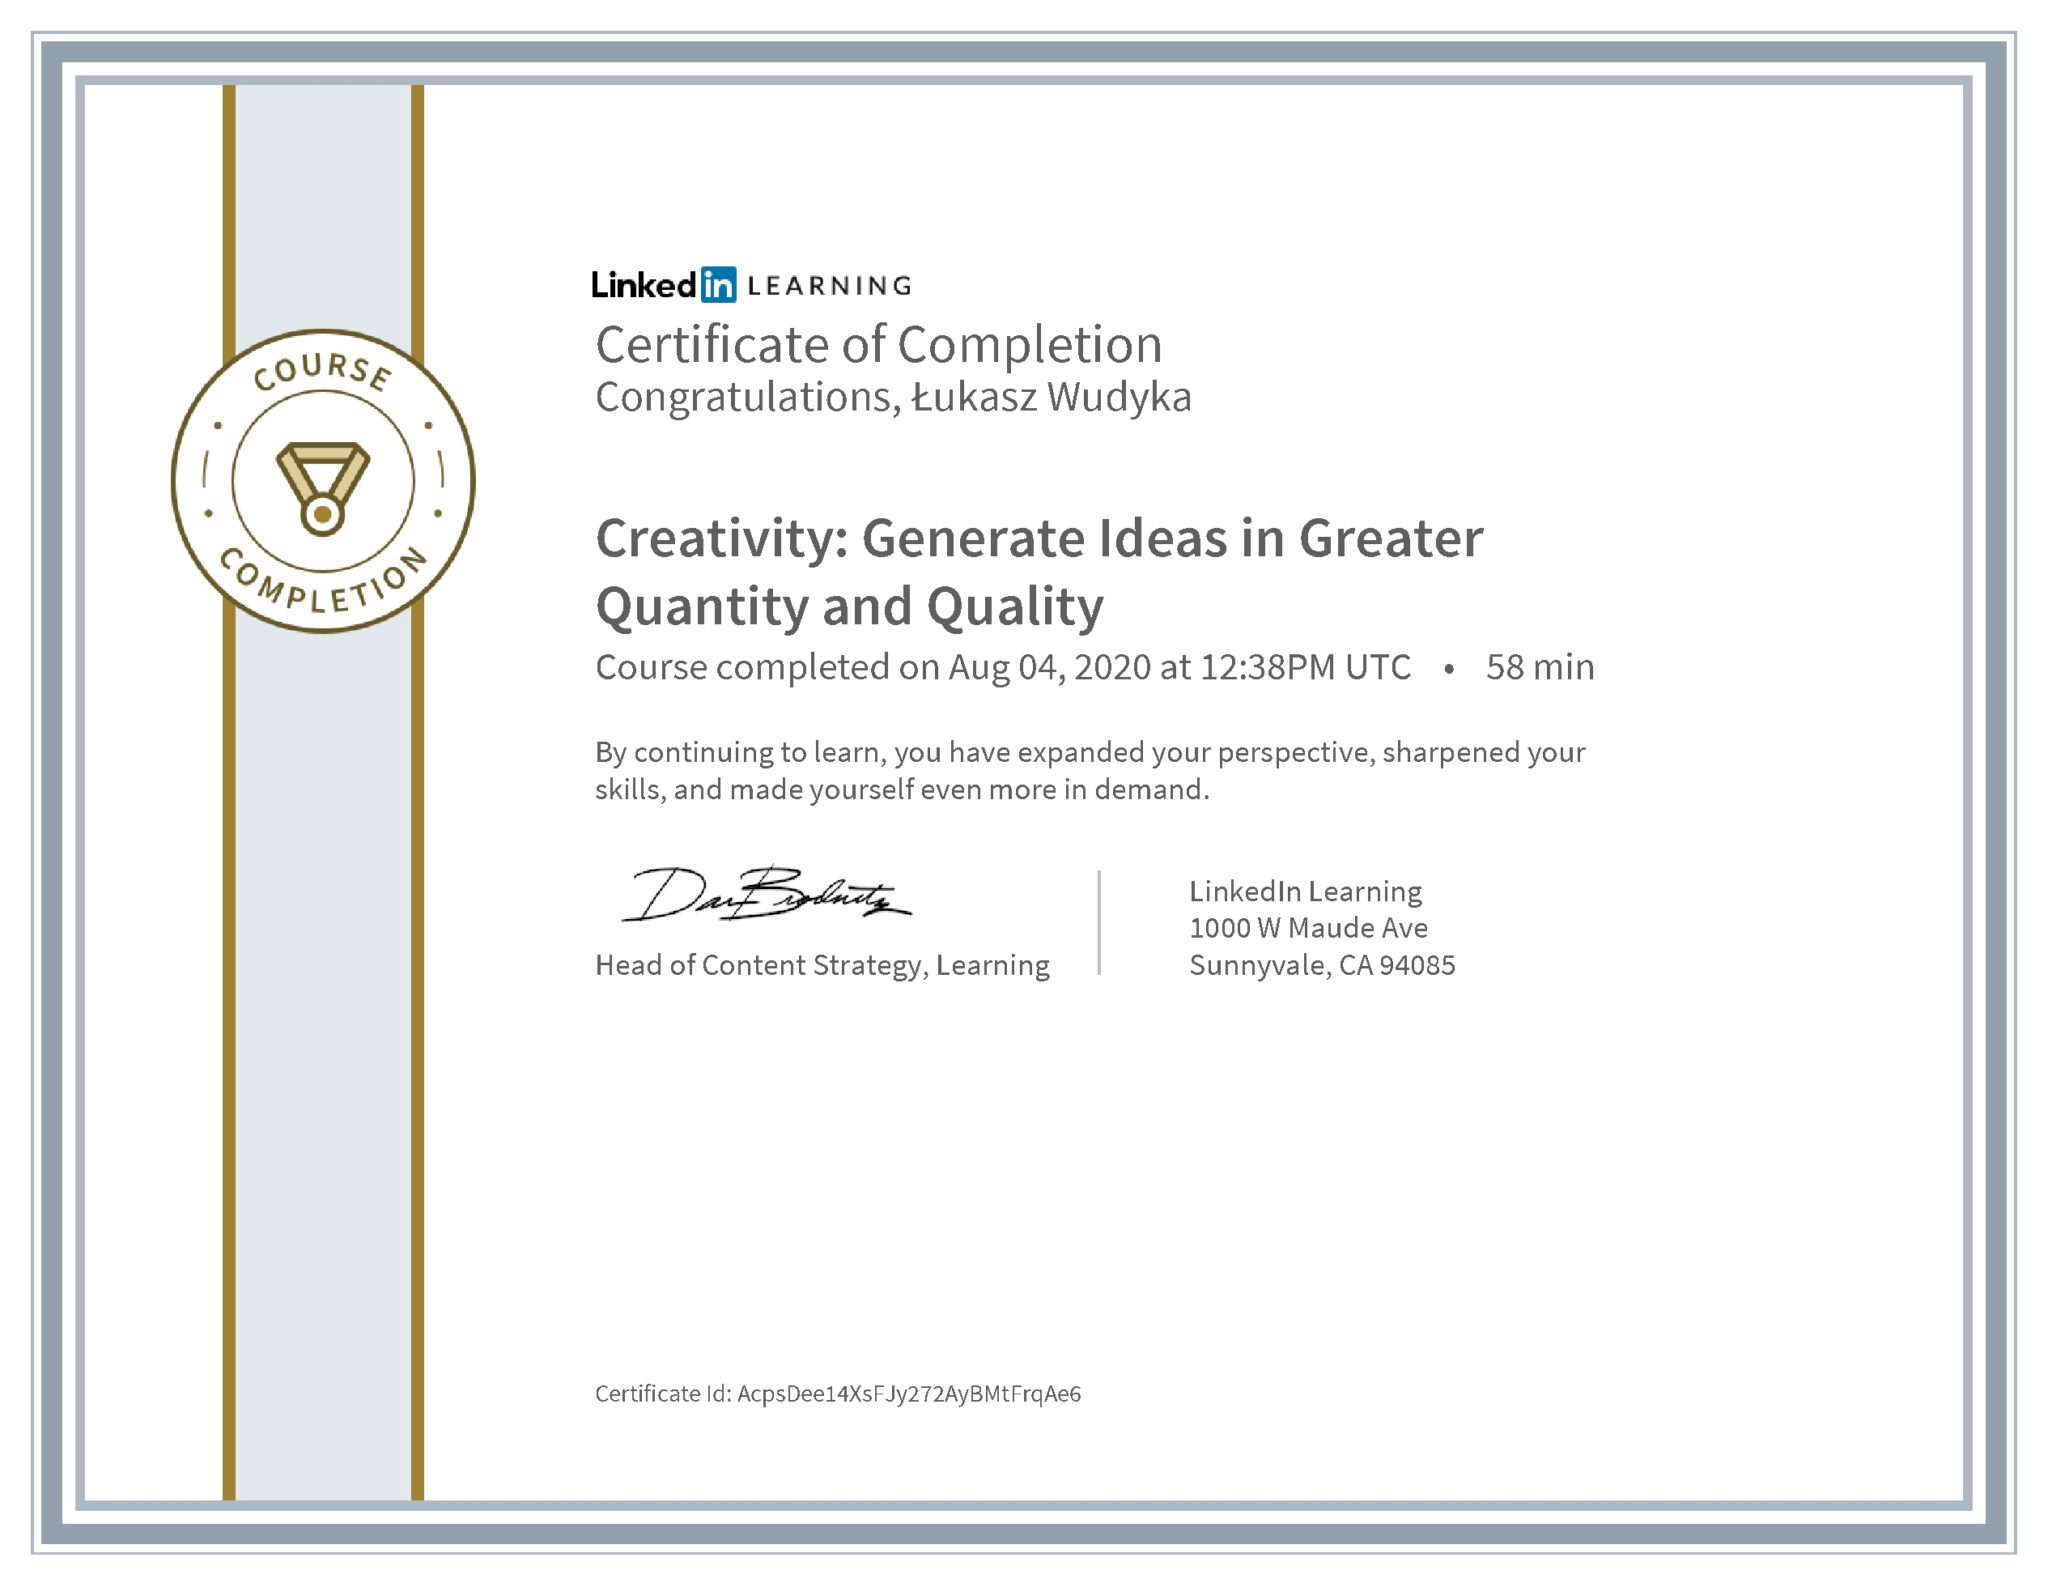 Łukasz Wudyka certyfikat LinkedIn Creativity: Generate Ideas in Greater Quantity and Quality